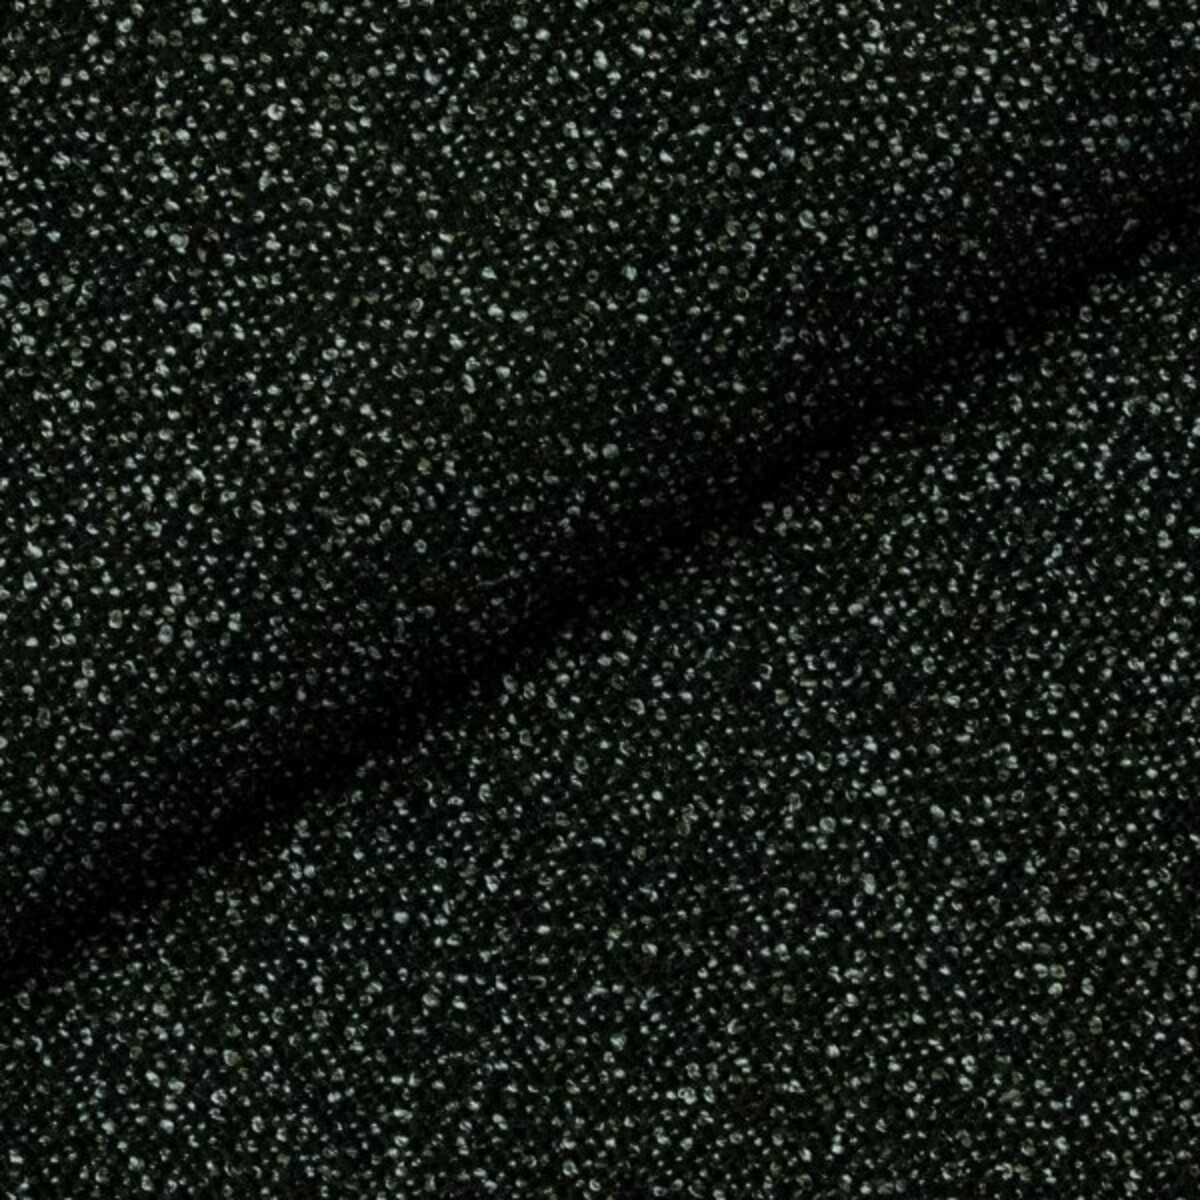 Łatwa w utrzymaniu tkanina Bloom 10 Fargotex w kolorze czarnym. Ciekawy splot, wytrzymała struktura i głęboka barwa.